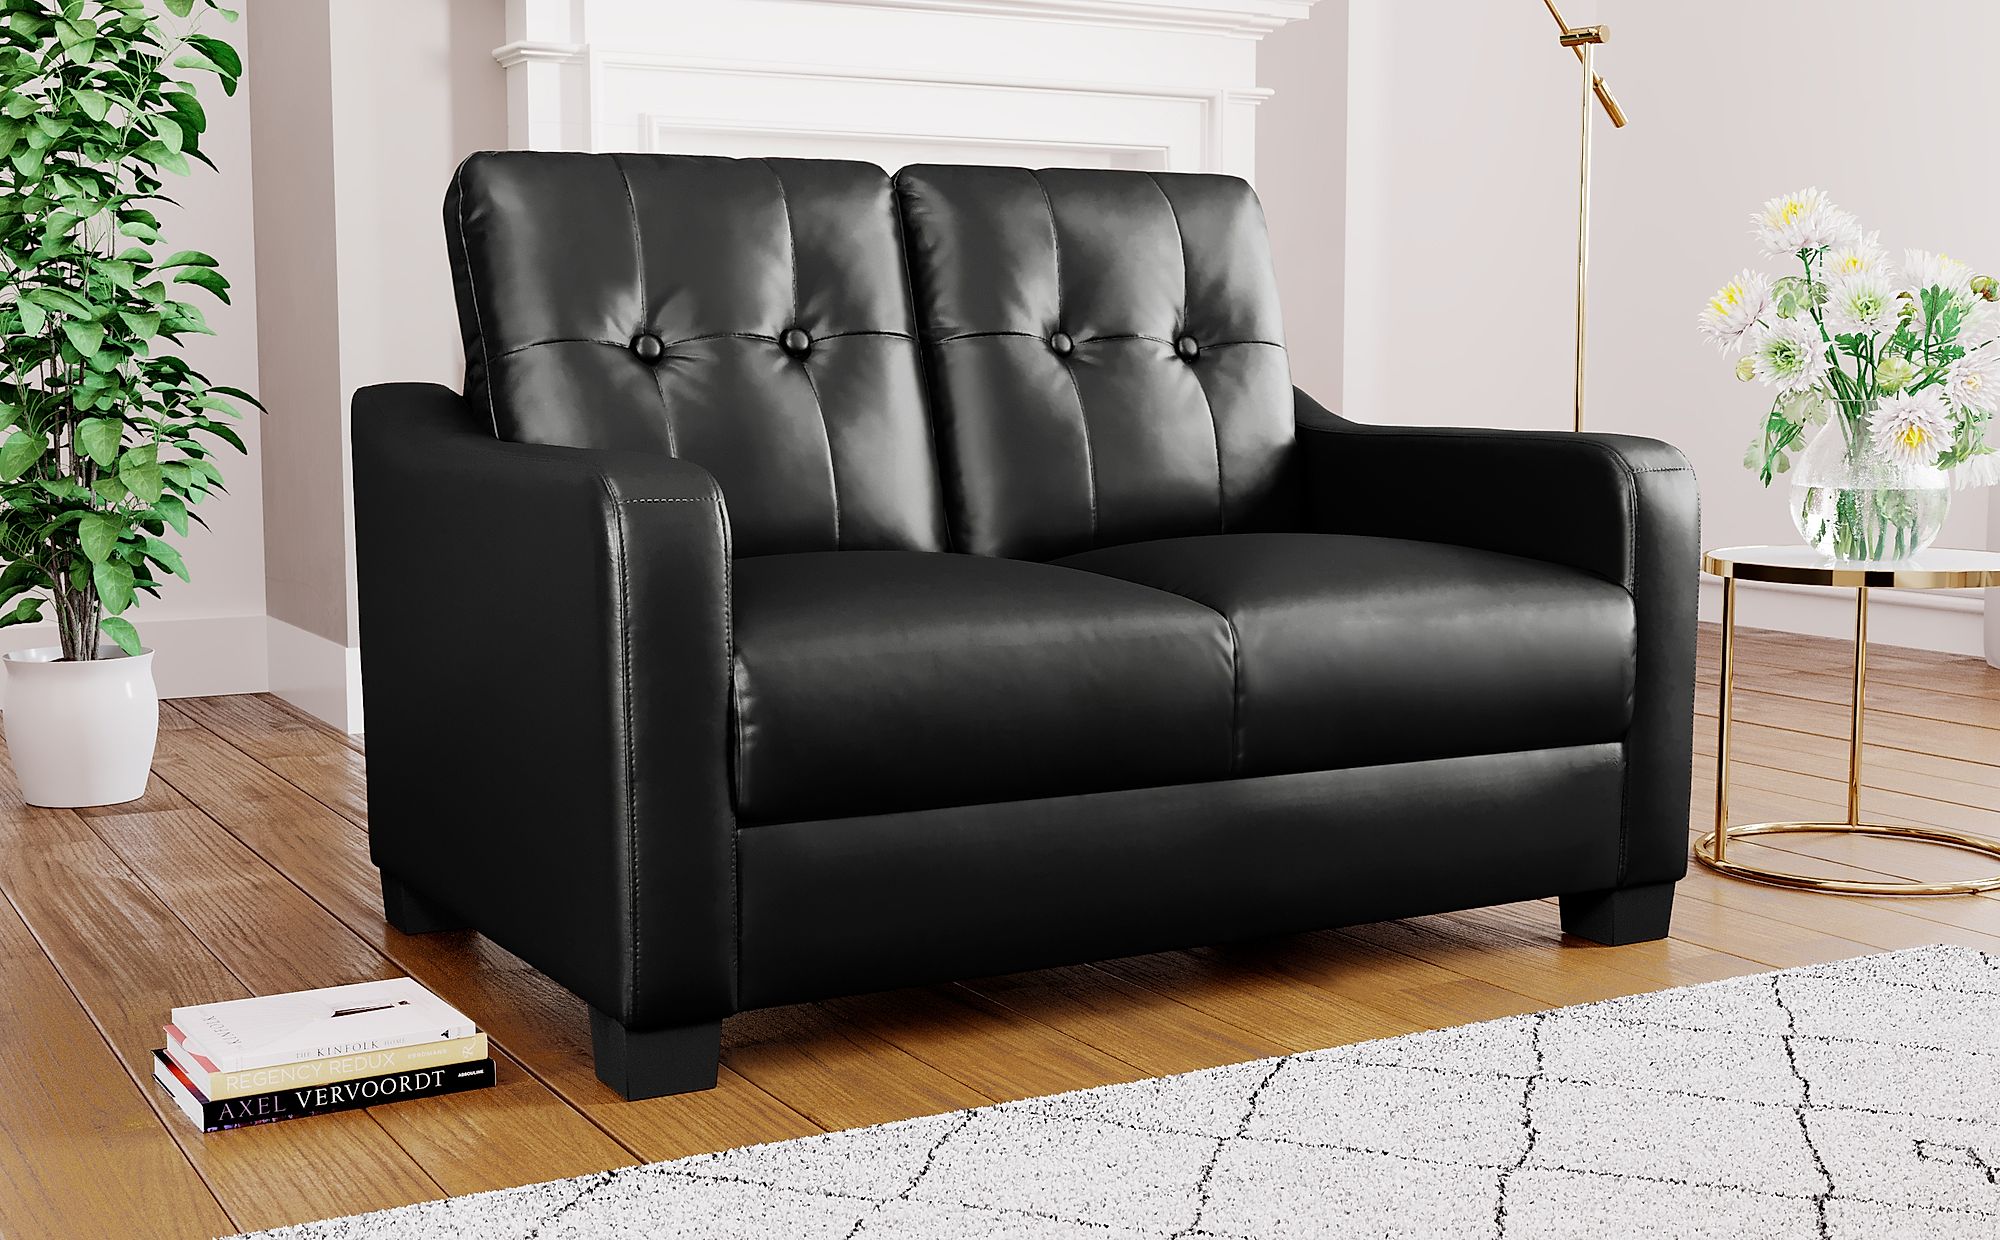 2 seater black leather sofa ikea